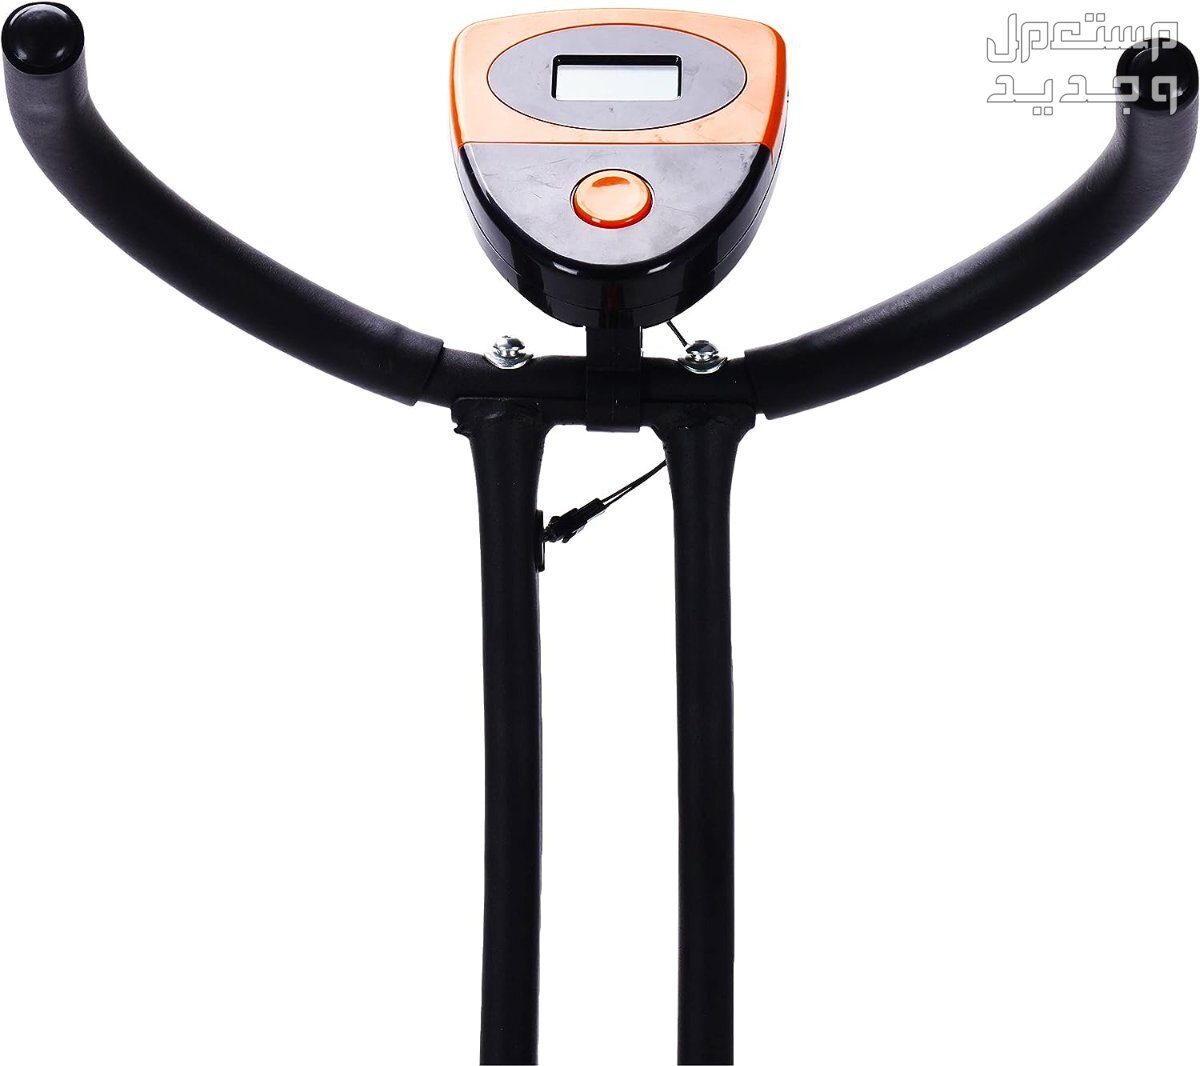 ارخص اجهزة رياضية مستعملة بالمواصفات والصور والاسعار في قطر جهاز ‎دراجة كارديو ‎بودي بيلدر موديل ‎38-1112-Orange